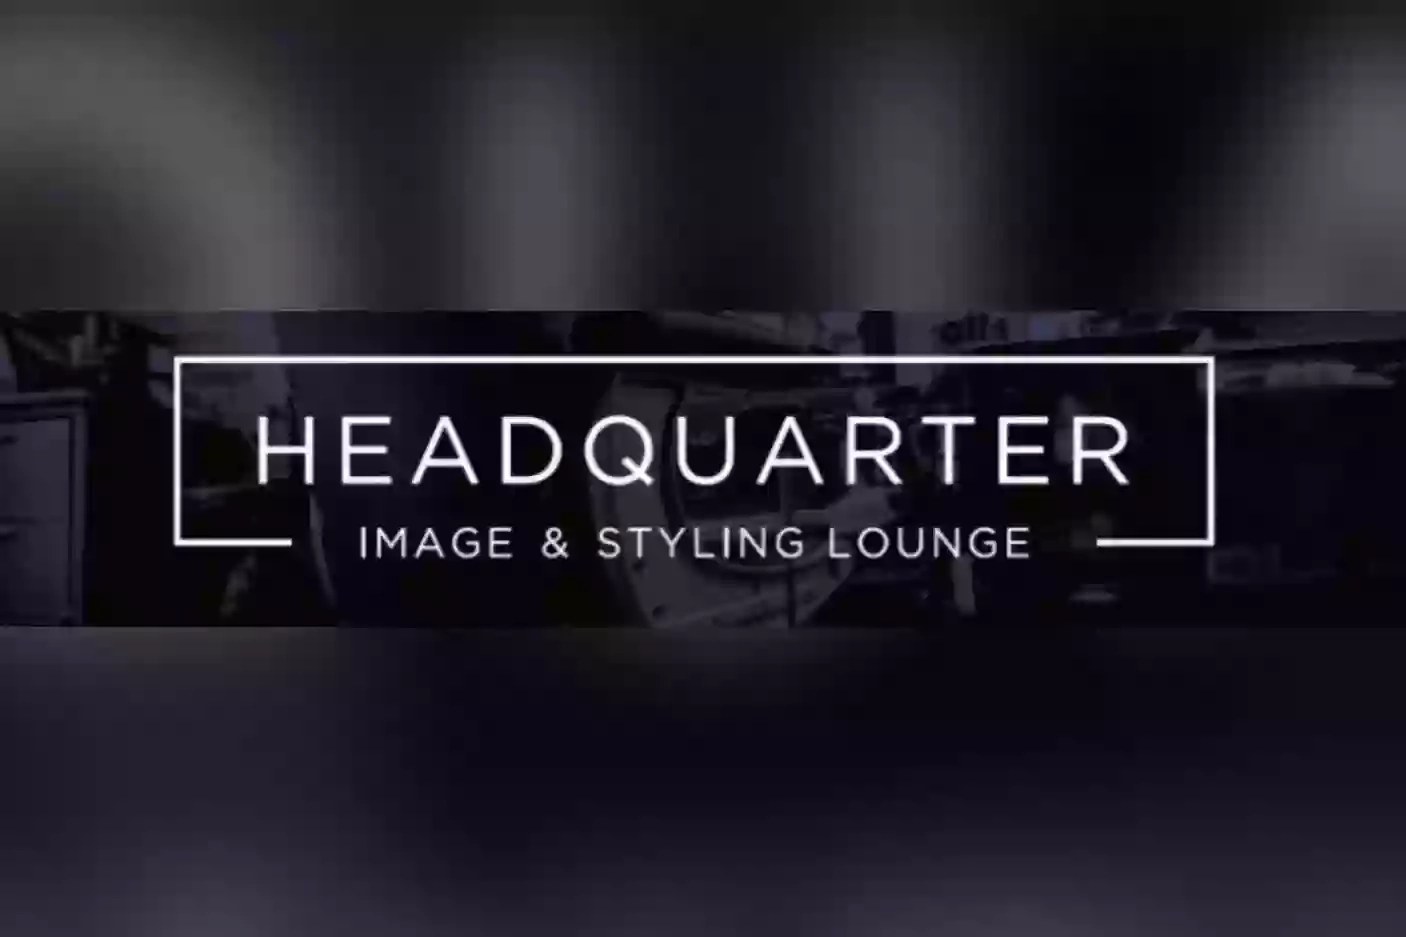 Headquarter - Image & Styling Lounge